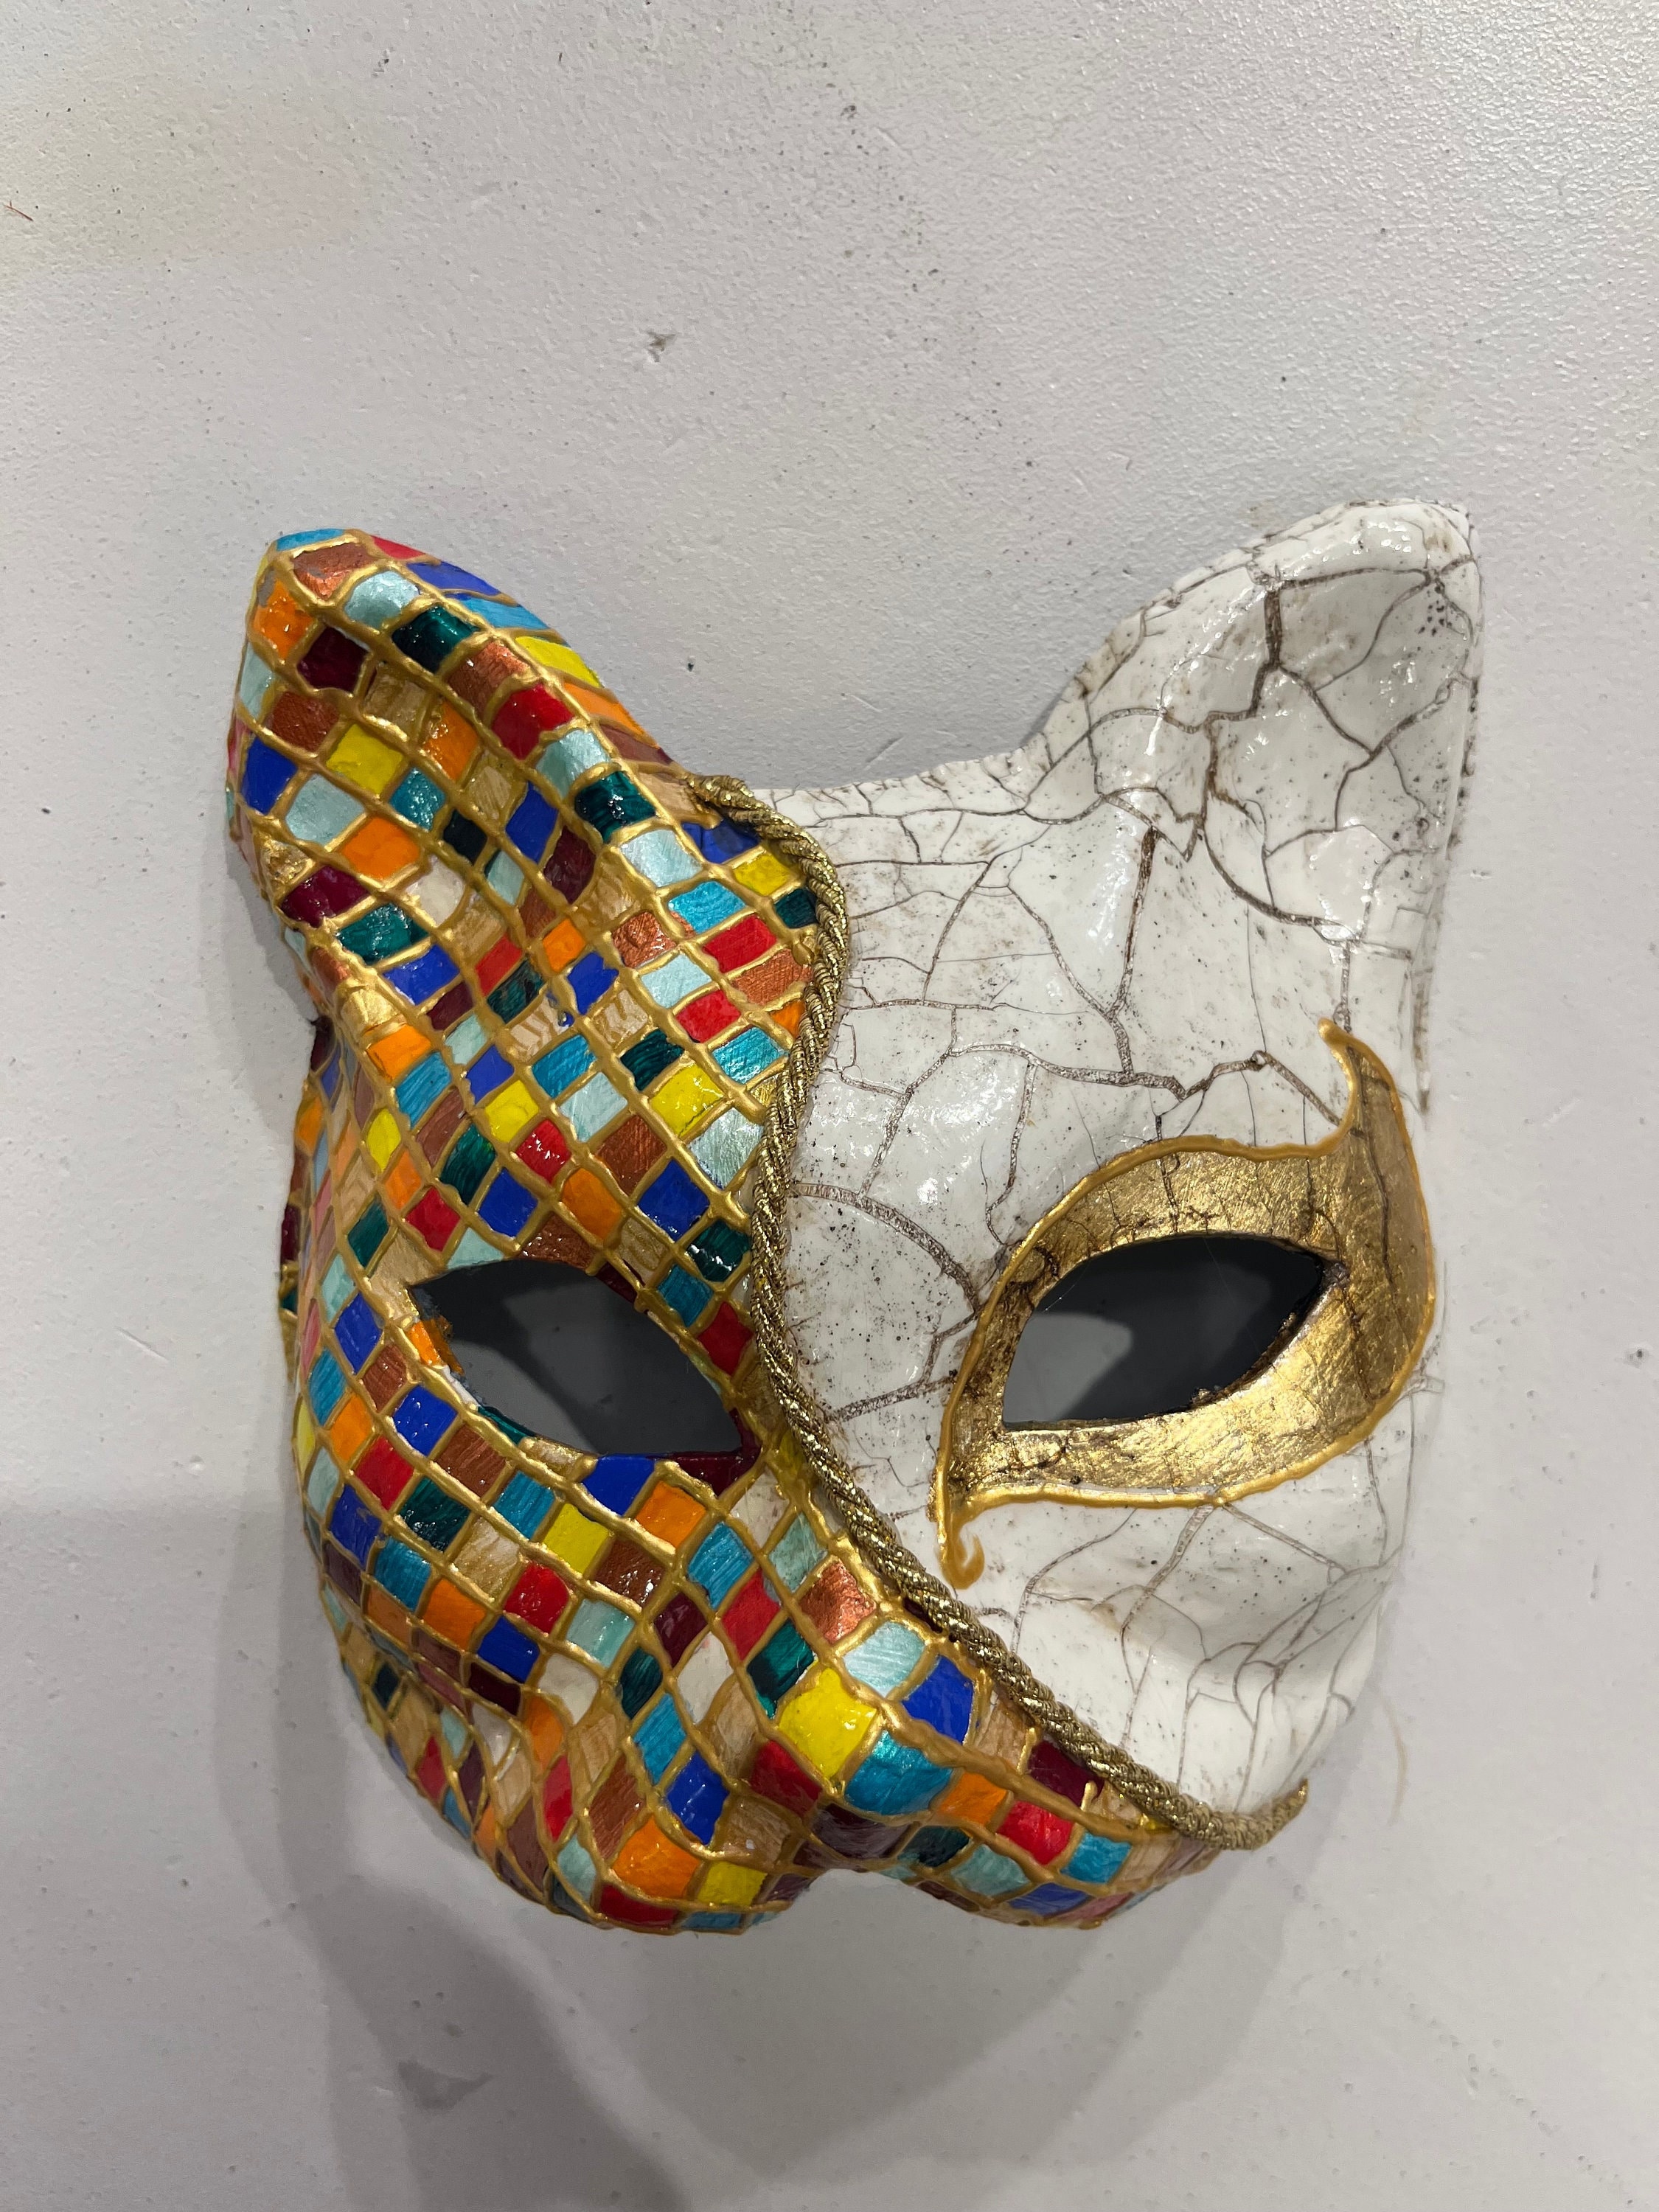 Gold Cat  tradition venetian papier mache mask for sale